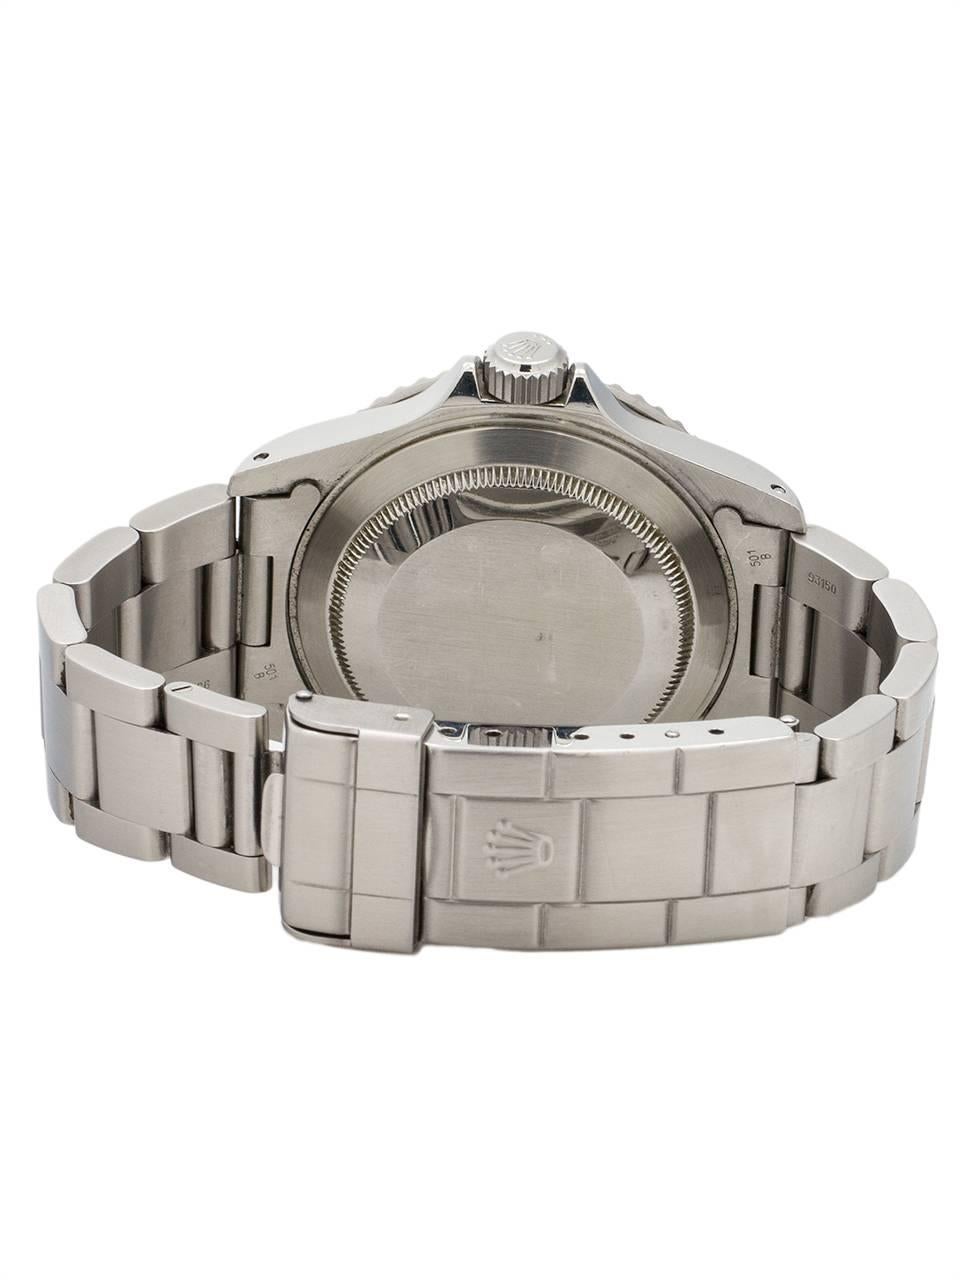 Men's Rolex Stainless Steel Submariner Automatic Wristwatch Ref 14060, circa 2000